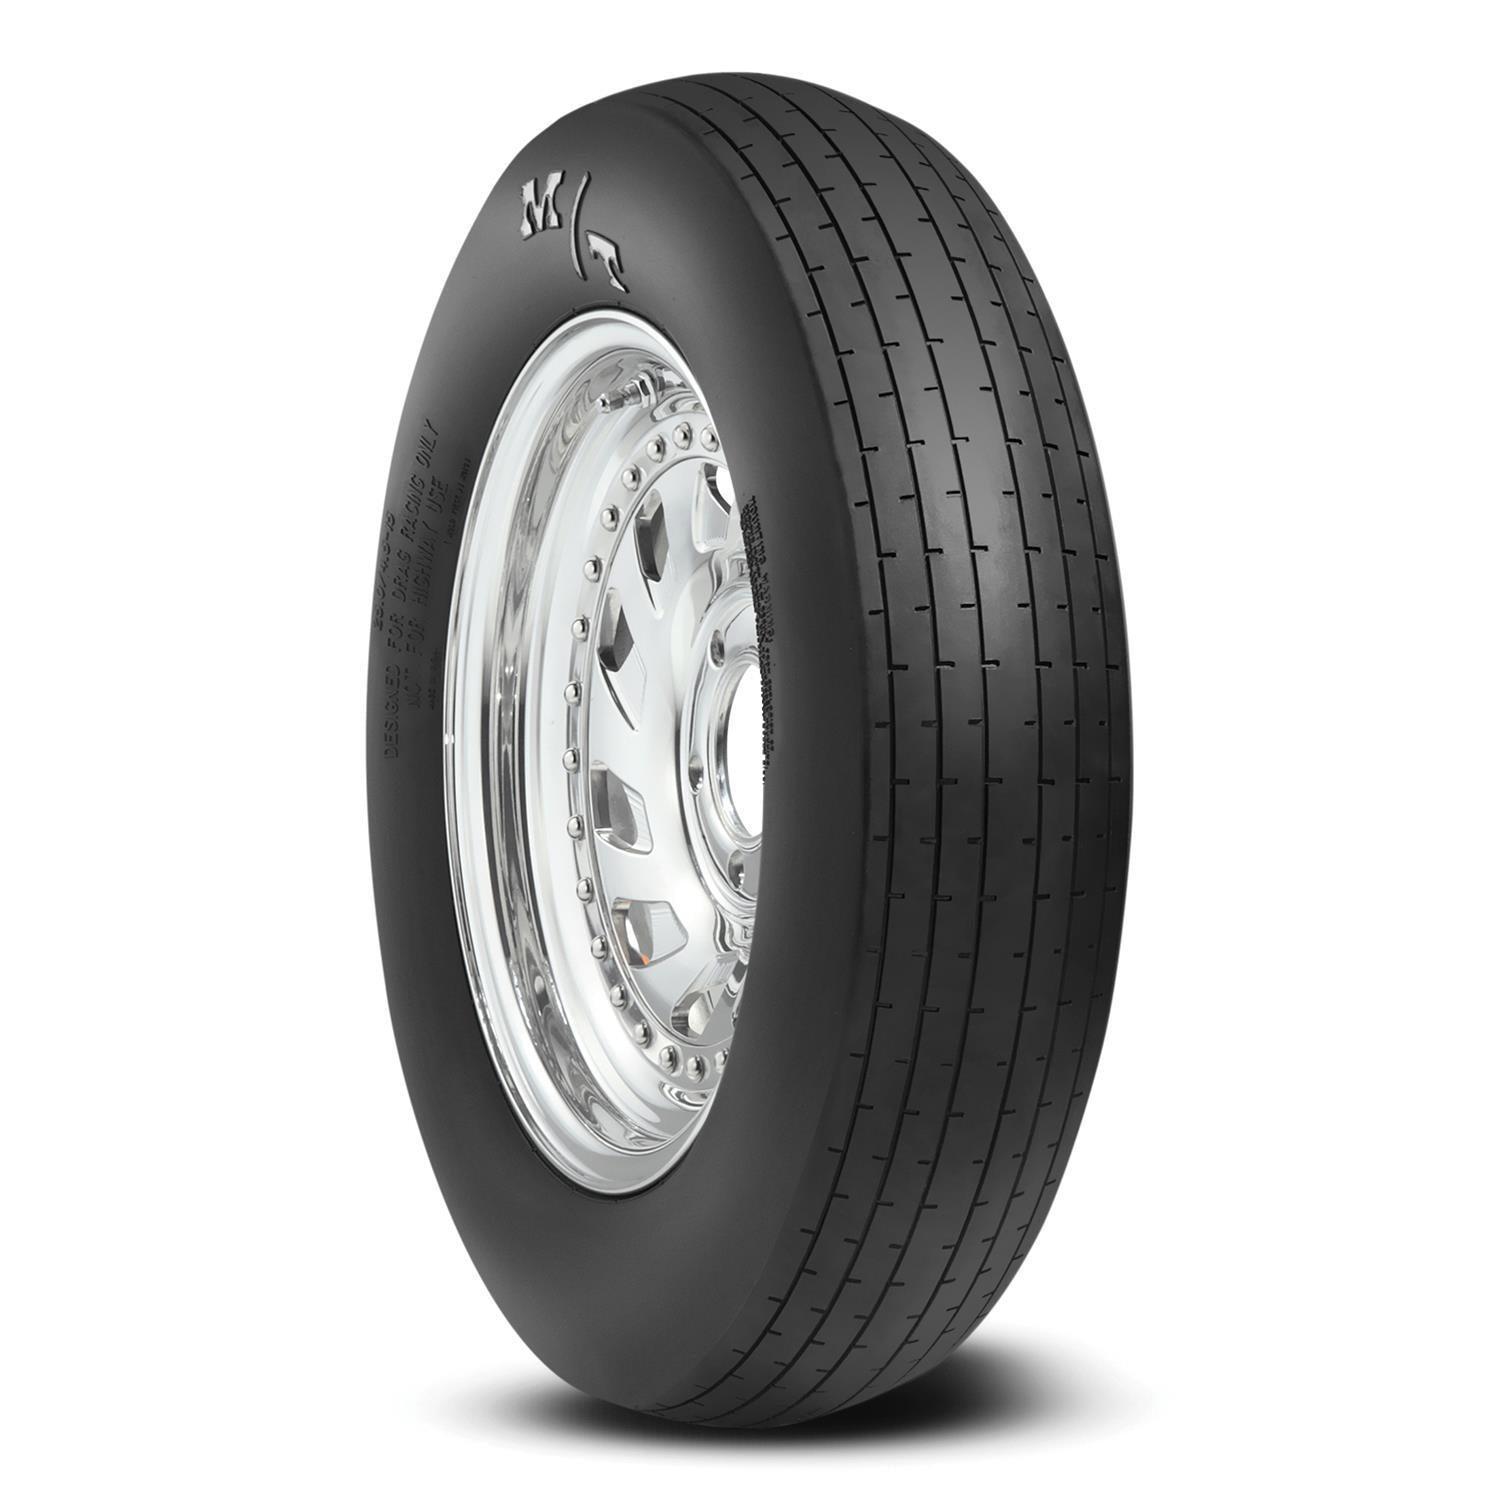 24x4.5-15 ET Drag Front Tire - Burlile Performance Products